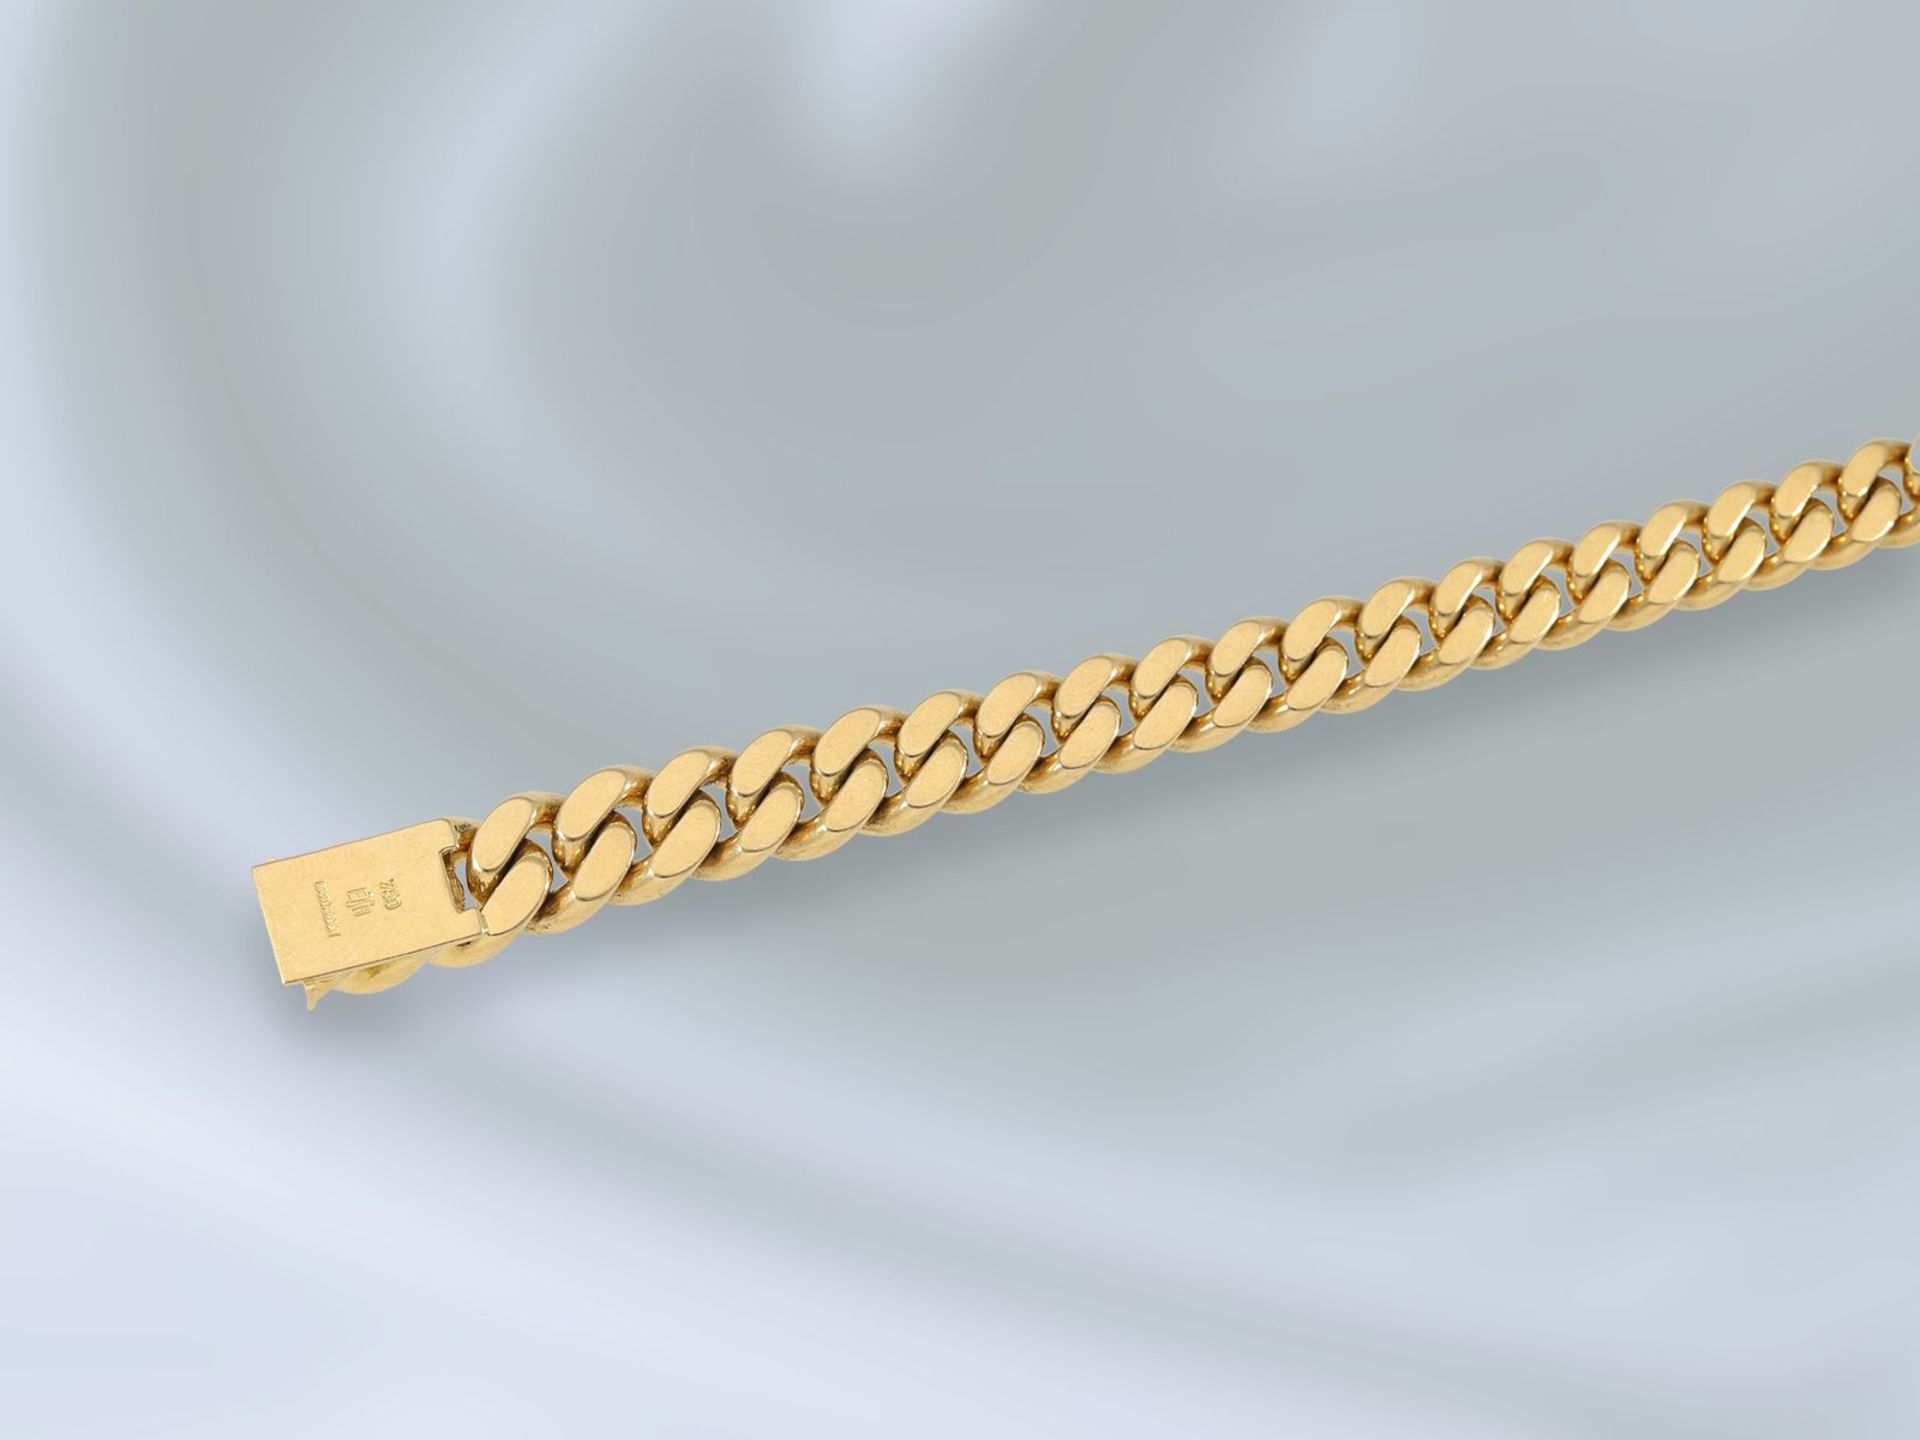 Armband: sehr massive Goldschmiedearbeit, bez. Handarbeit, 18K GoldCa. 23cm lang, ca. 68,2g, 18K - Bild 2 aus 2